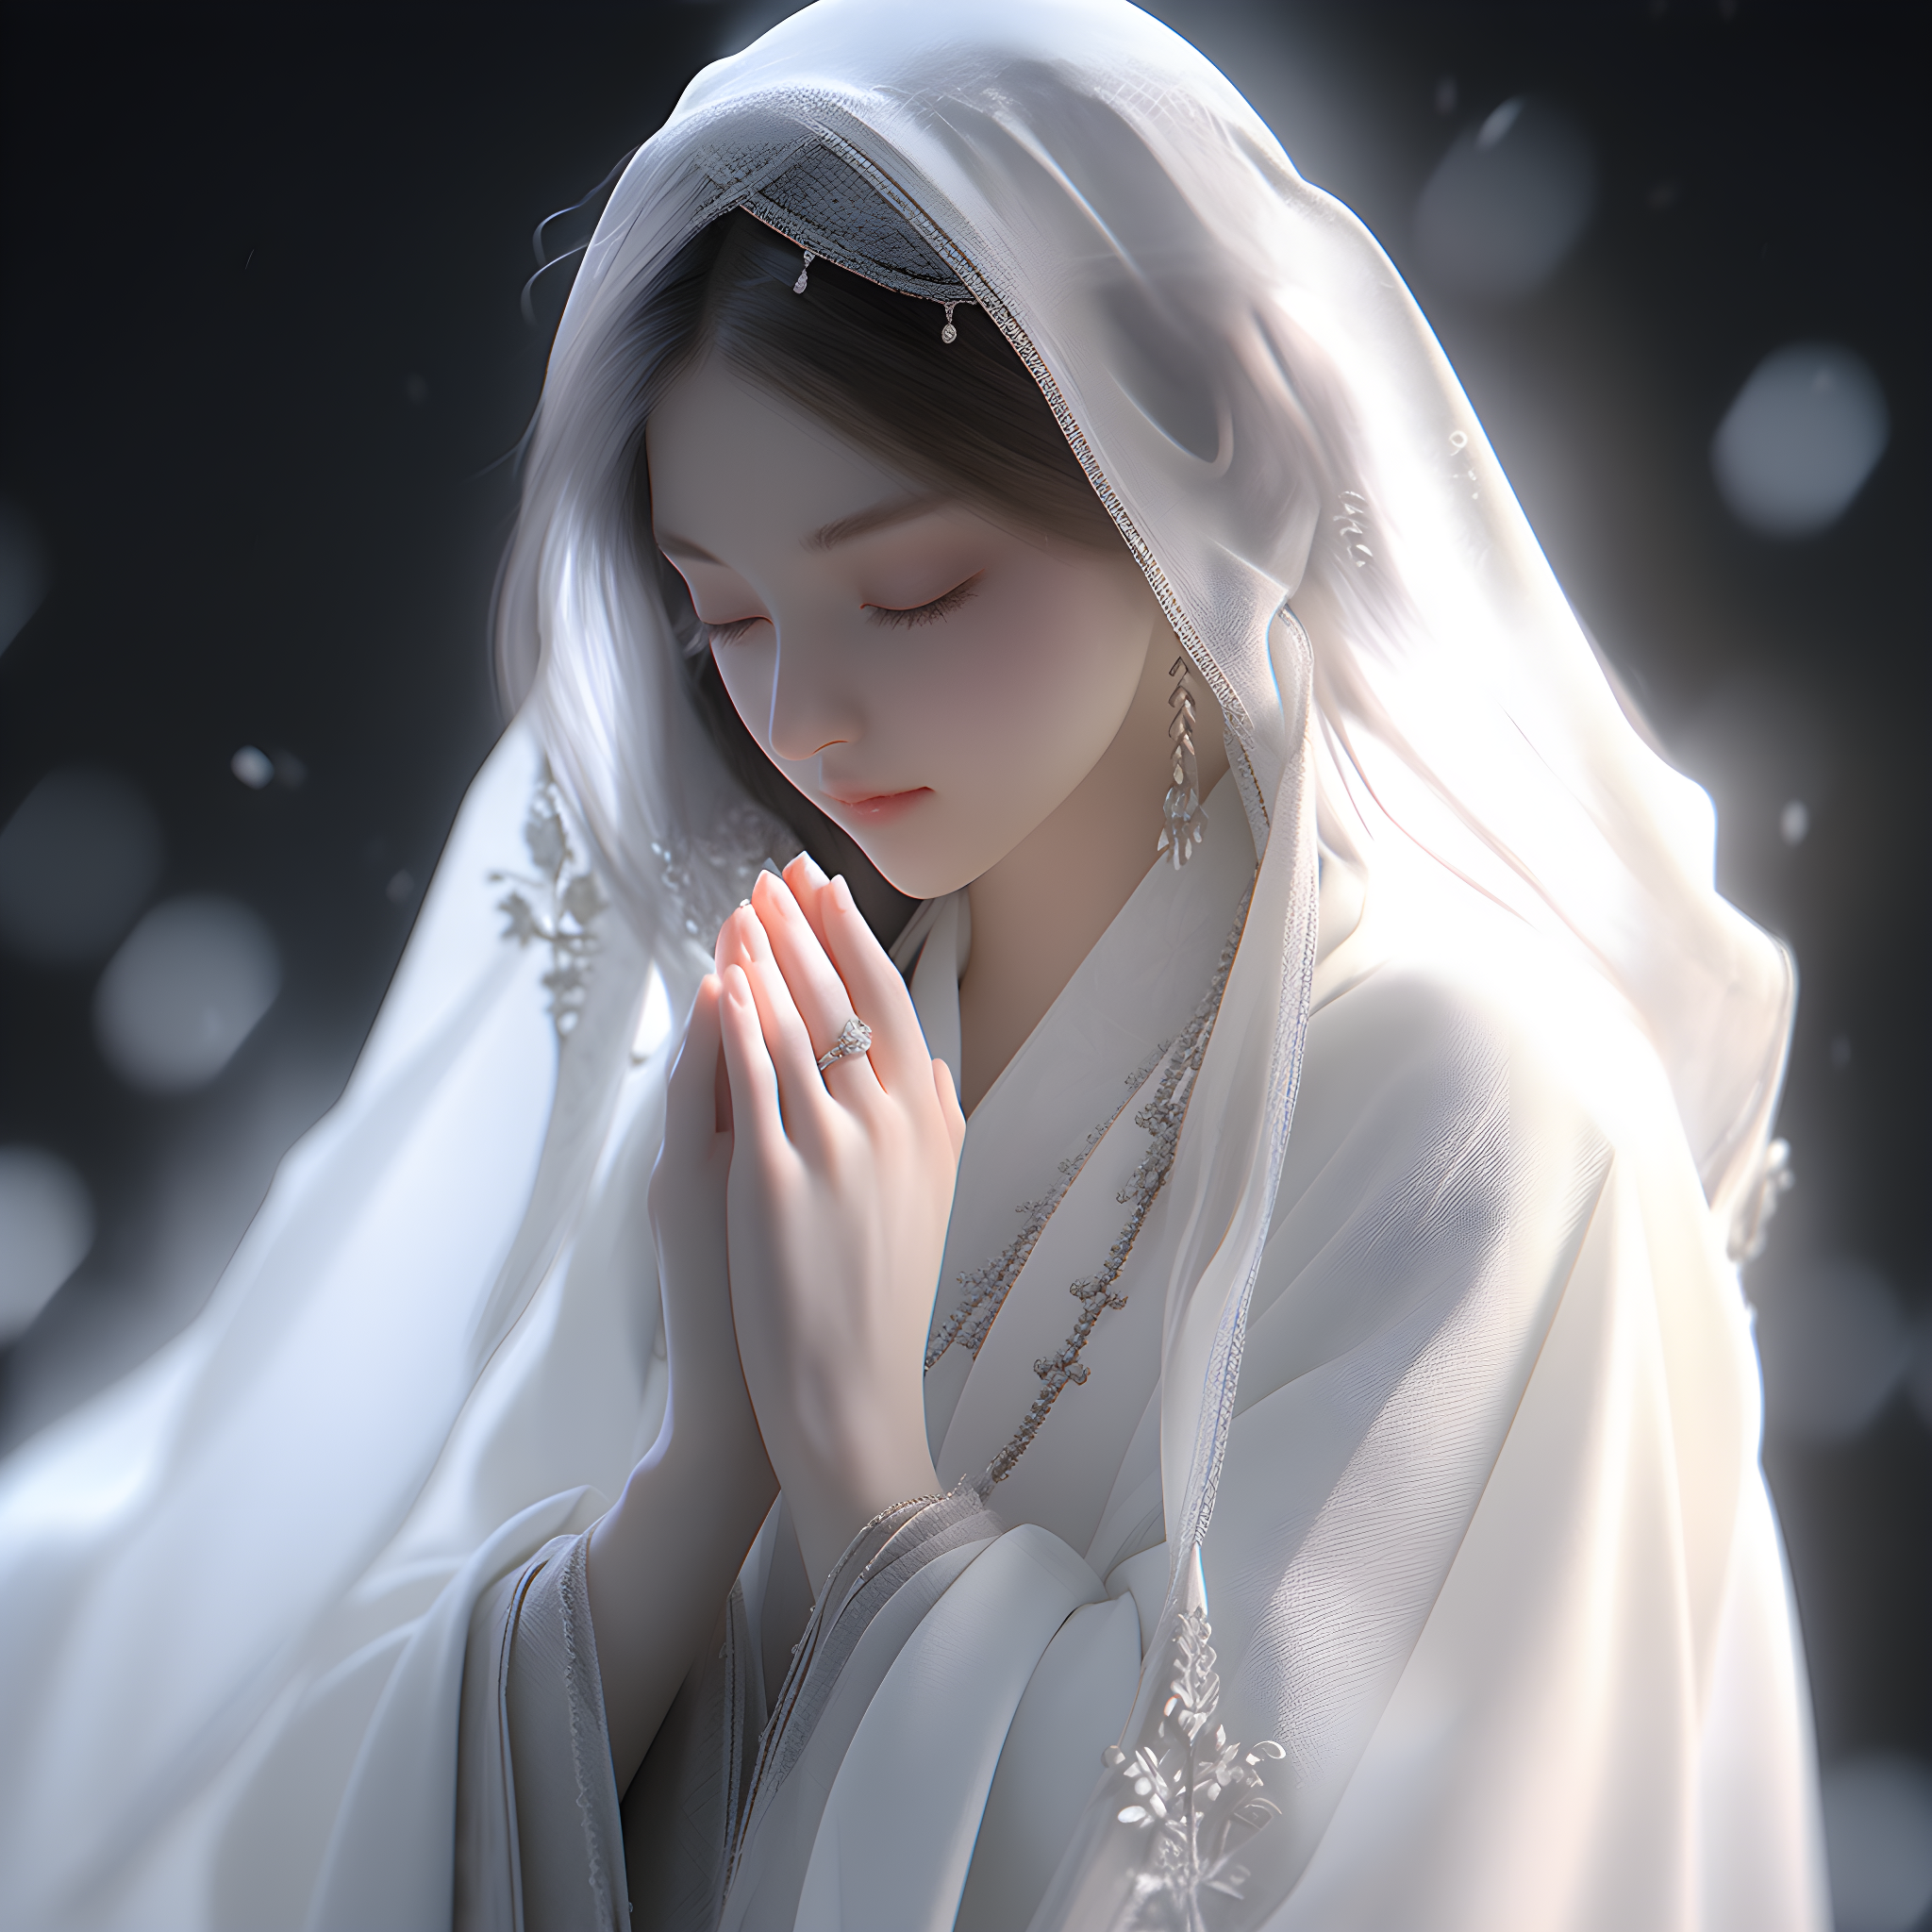 虔诚祈祷的女孩(白色汉服)